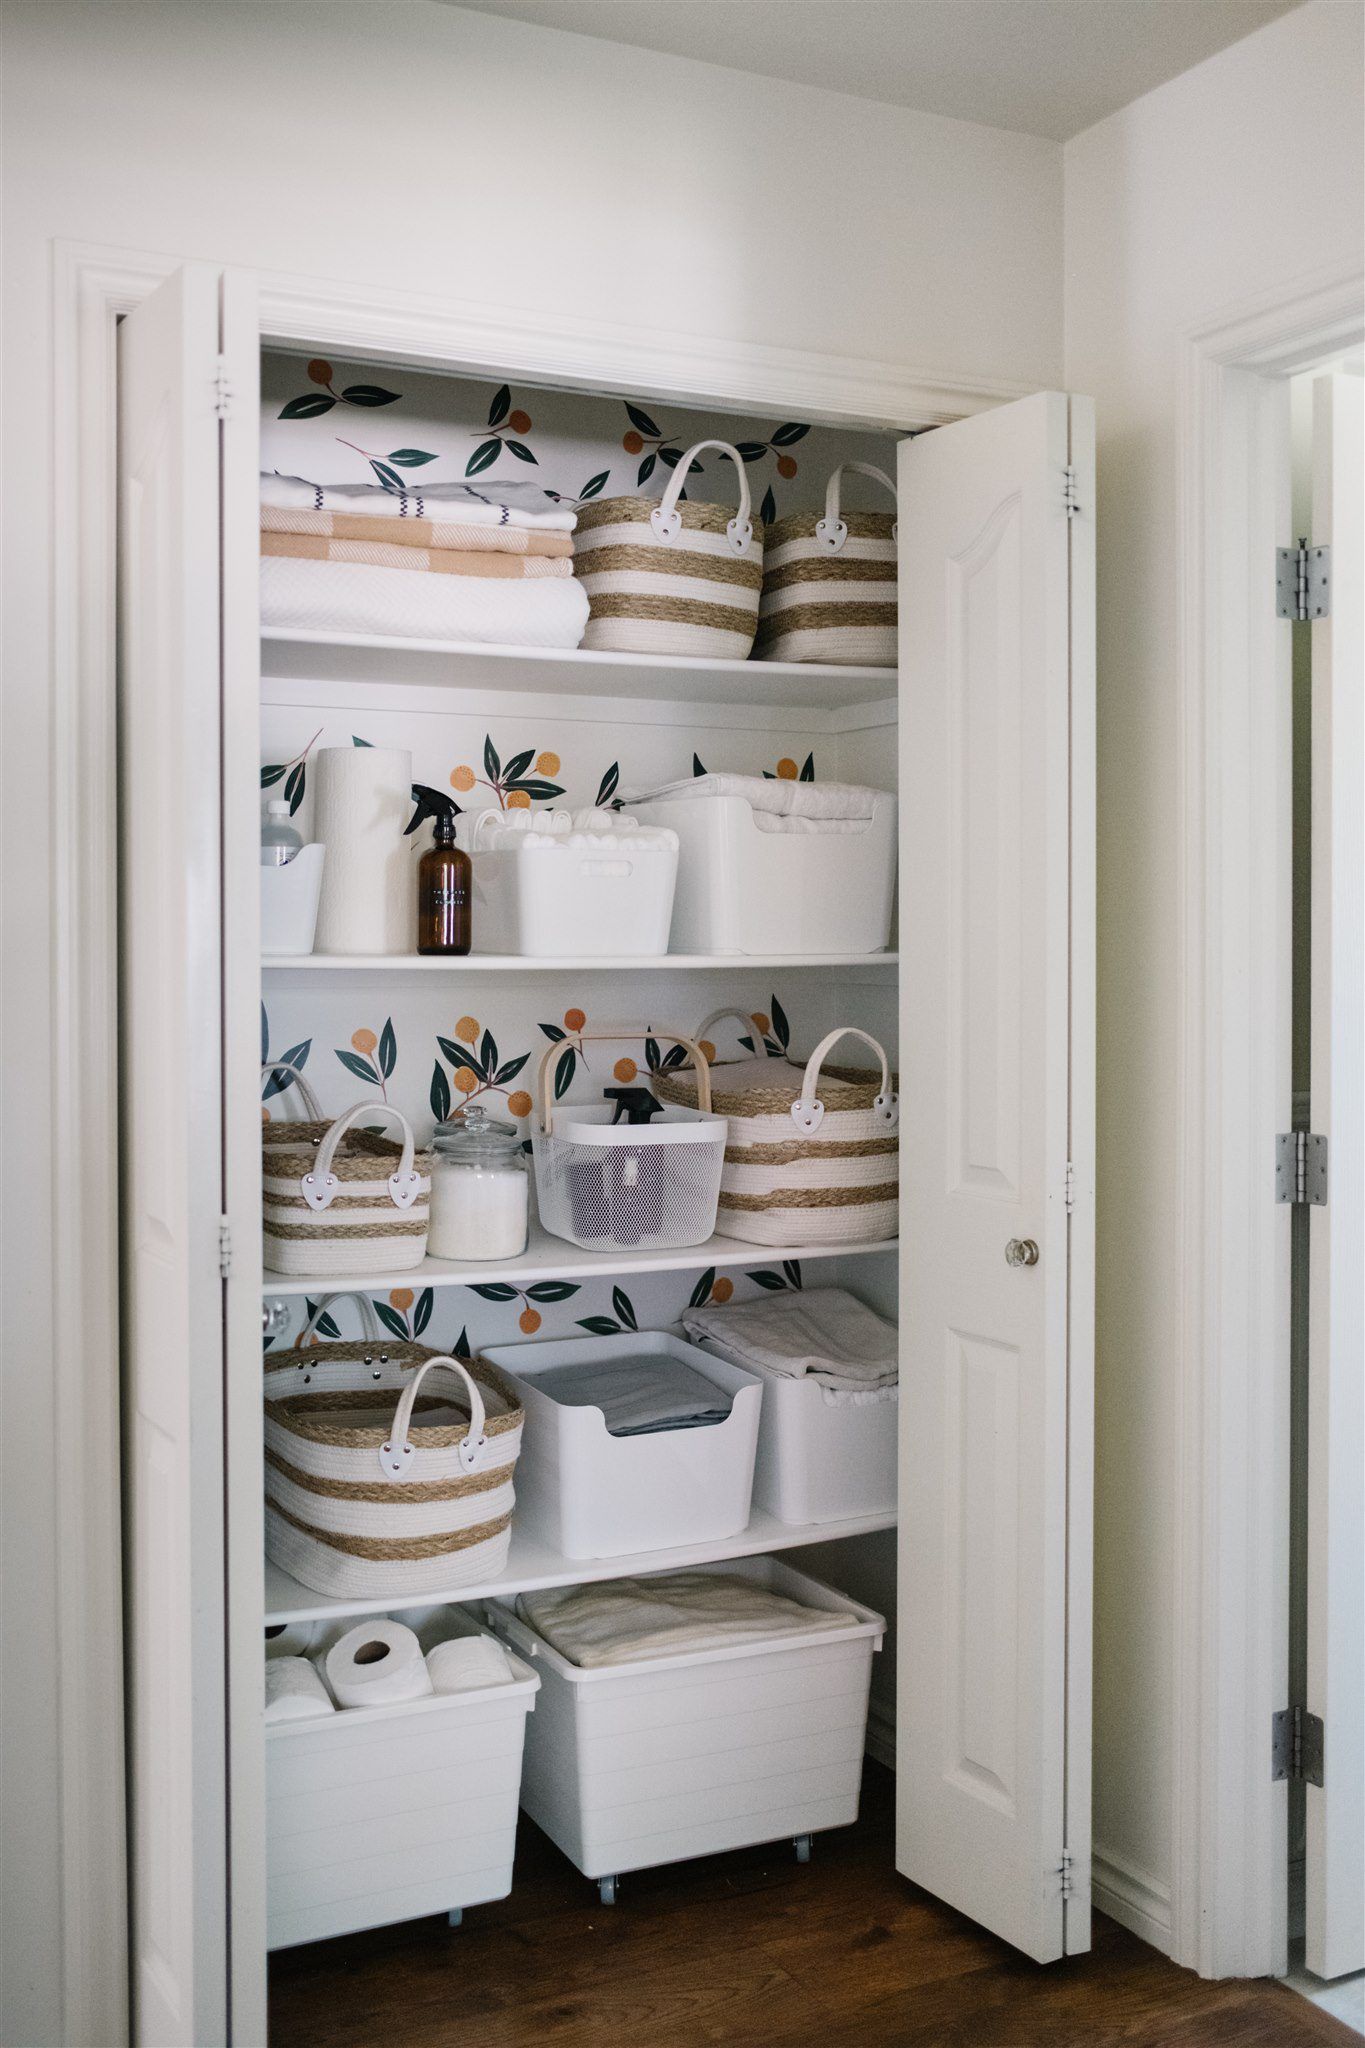 18 Best Linen Closet Organization Ideas   How to Organize a Linen ...